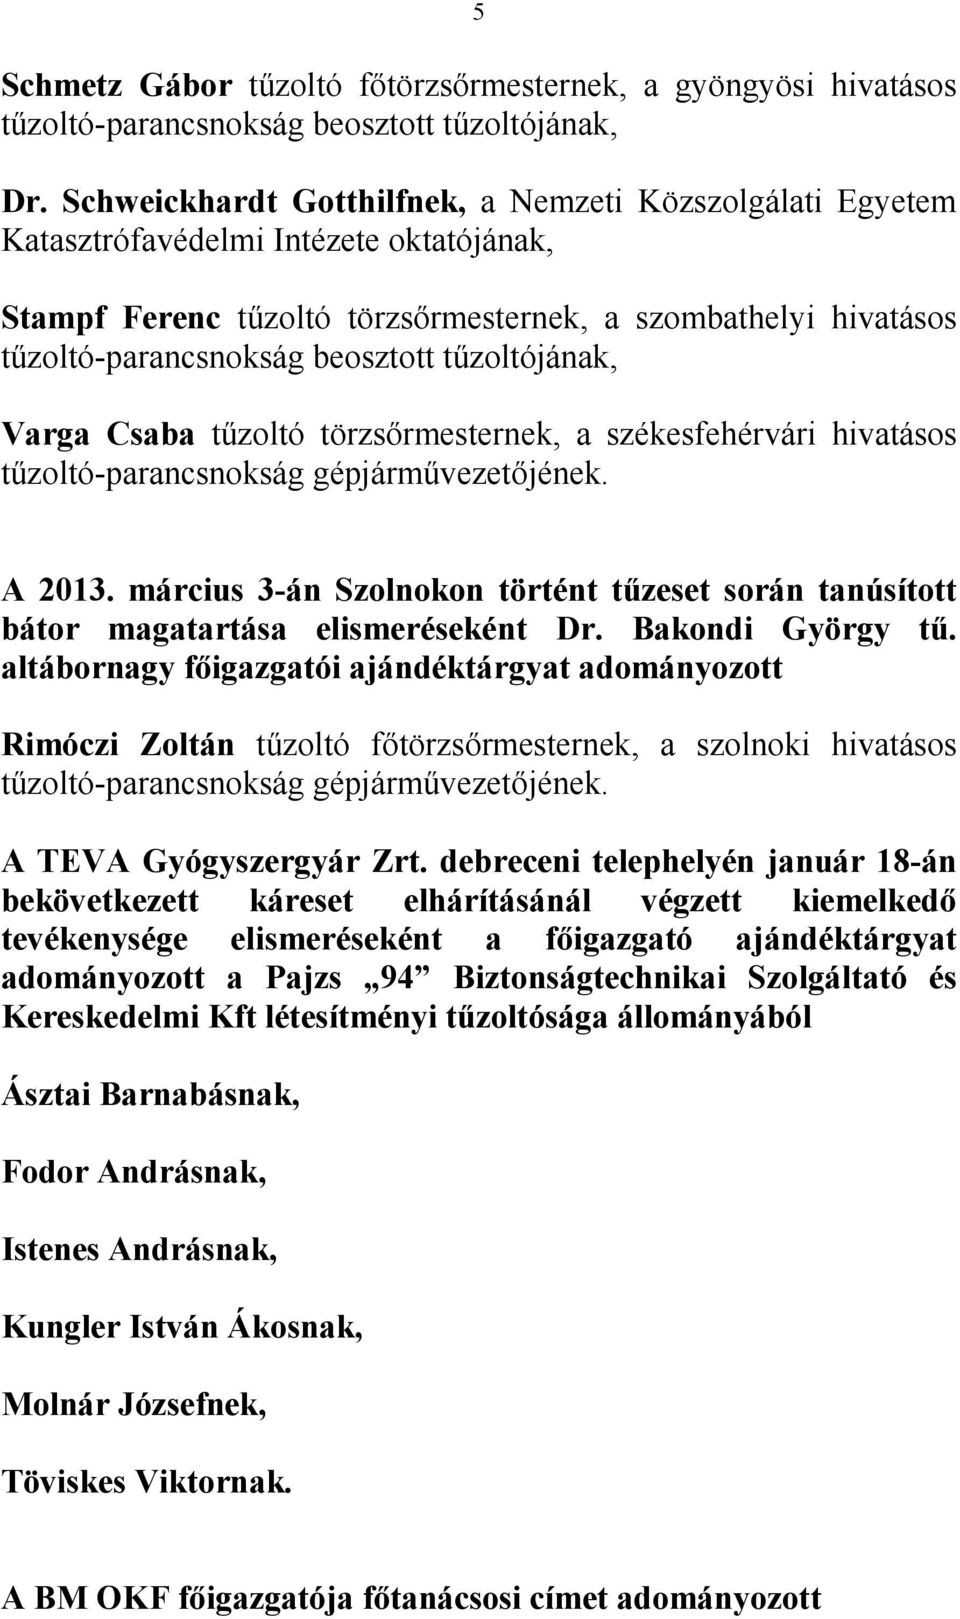 törzsırmesternek, a székesfehérvári hivatásos tőzoltó-parancsnokság gépjármővezetıjének. A 2013. március 3-án Szolnokon történt tőzeset során tanúsított bátor magatartása elismeréseként Dr.